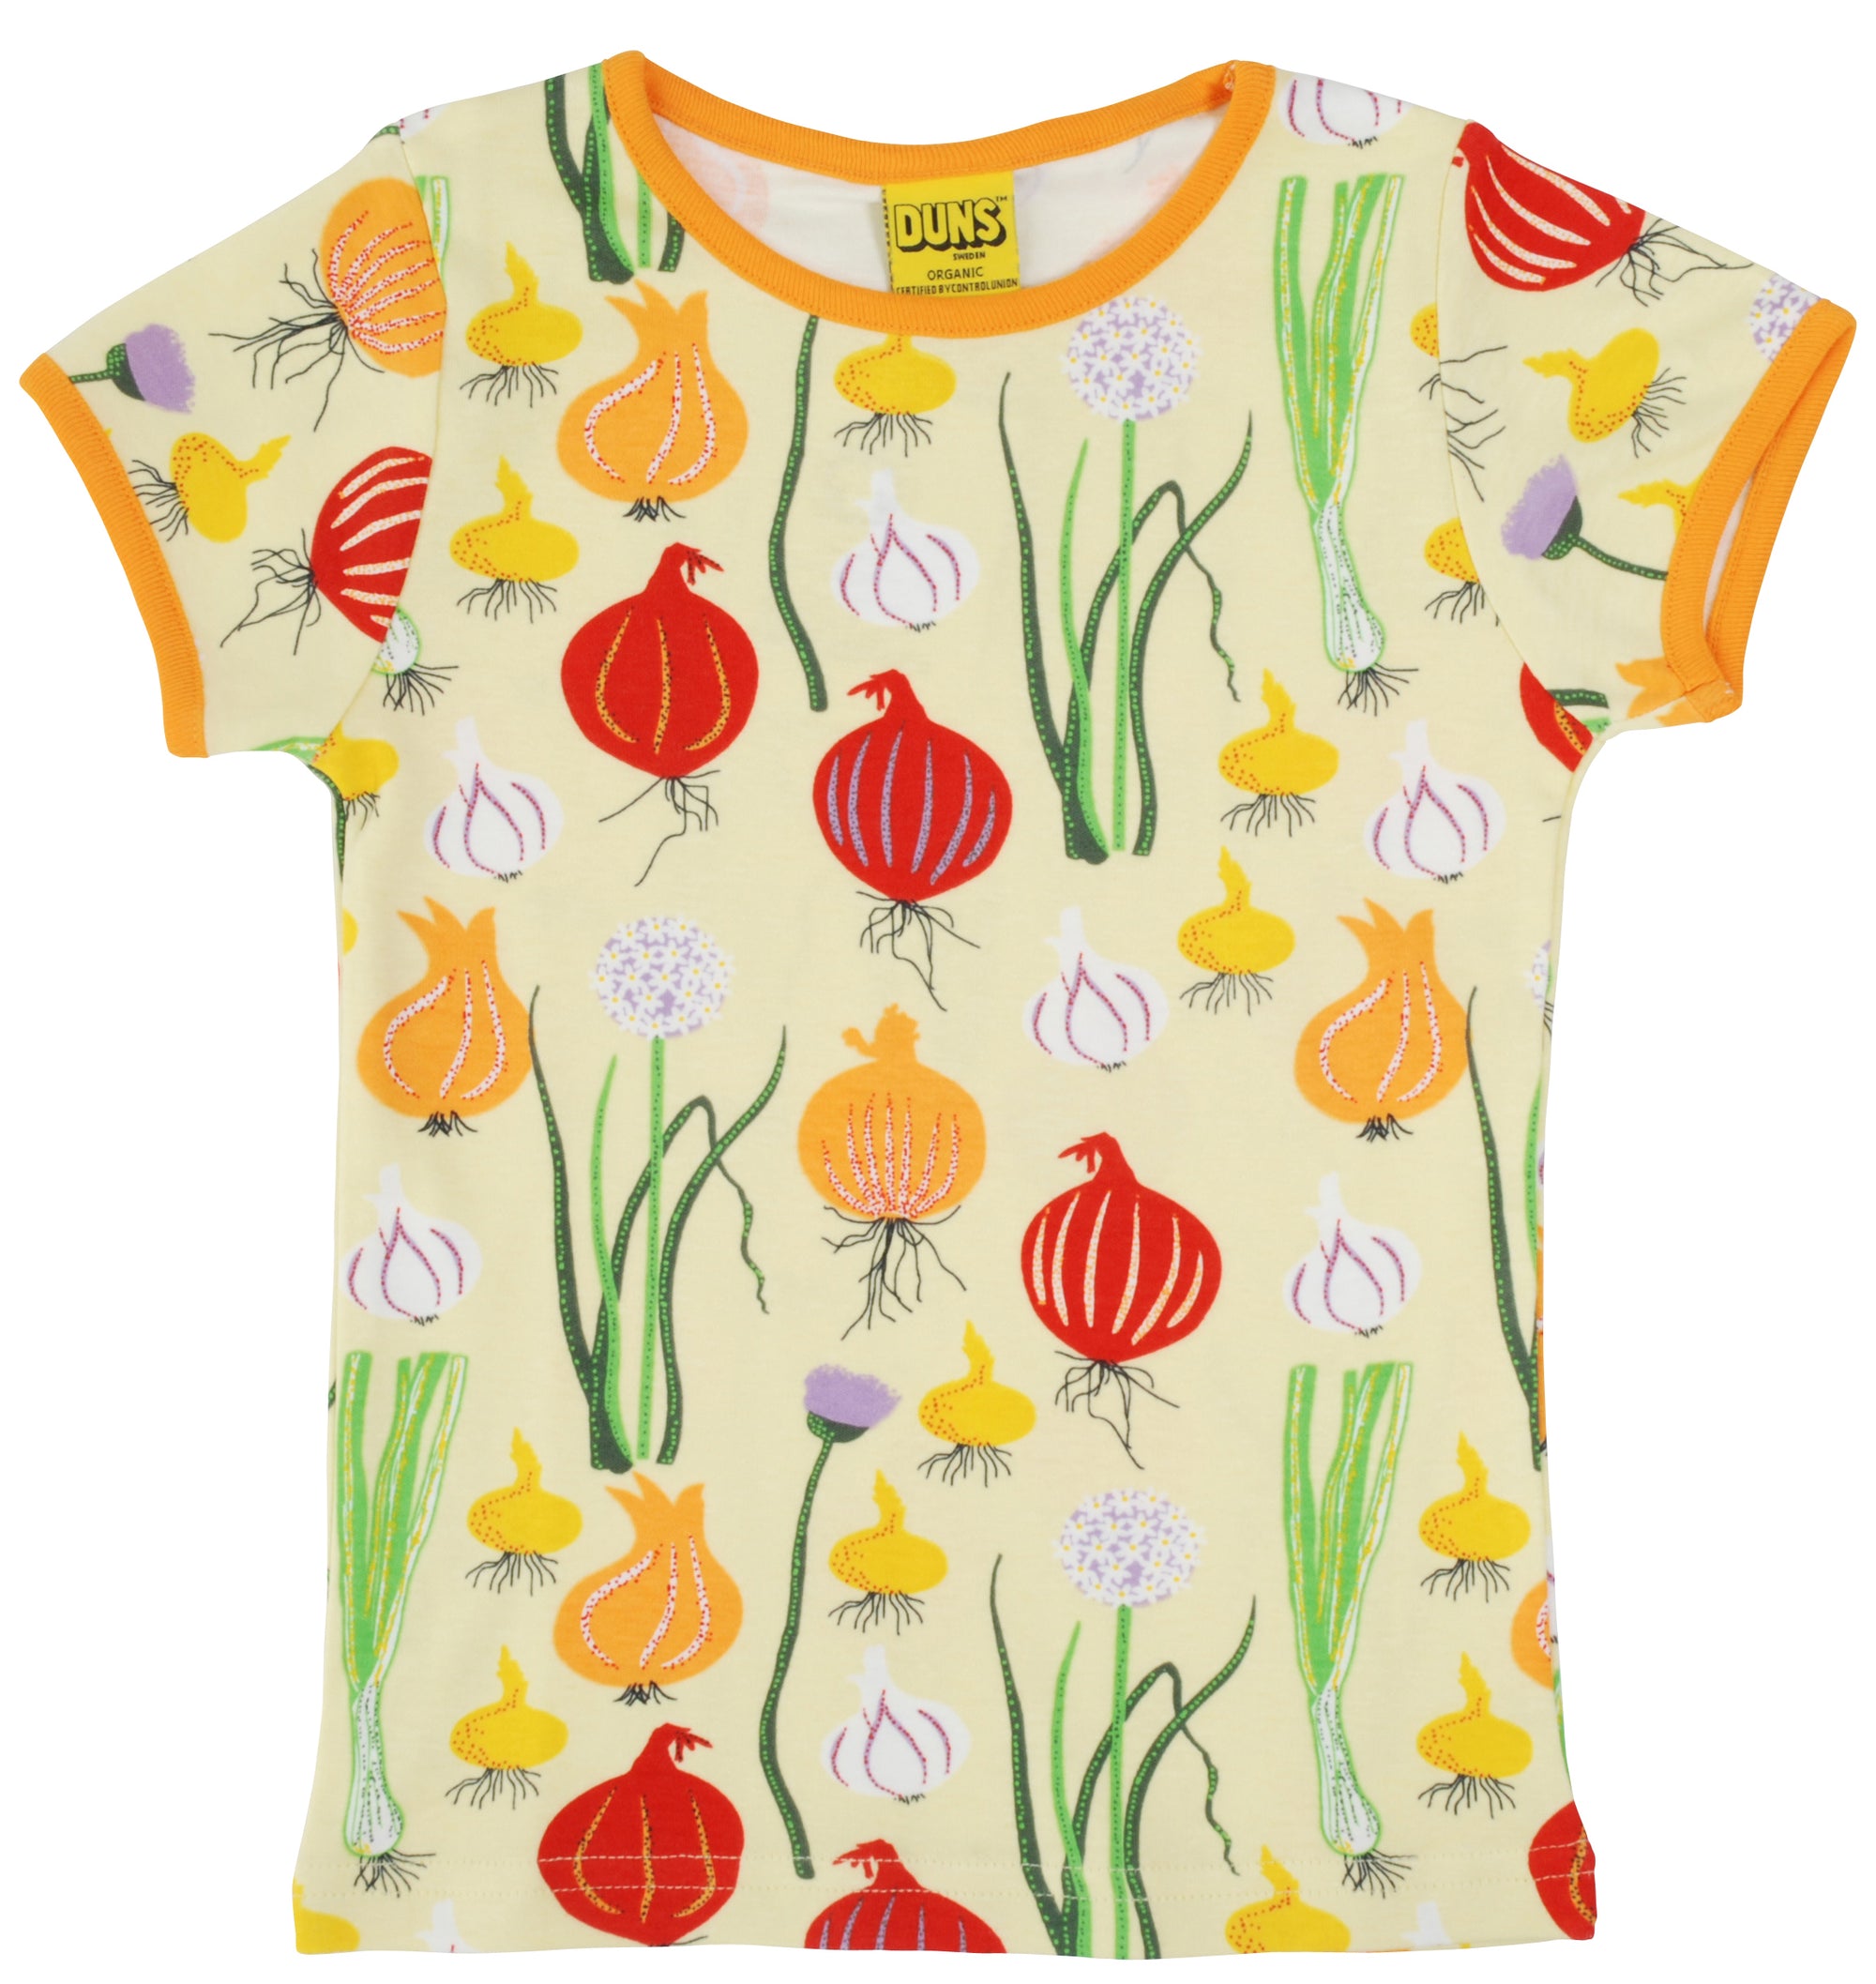 Duns Sweden - T-shirt Garlic, Chives and Onion Pale Green Shirt Knoflook, Bieslook & Ui Zacht Groen